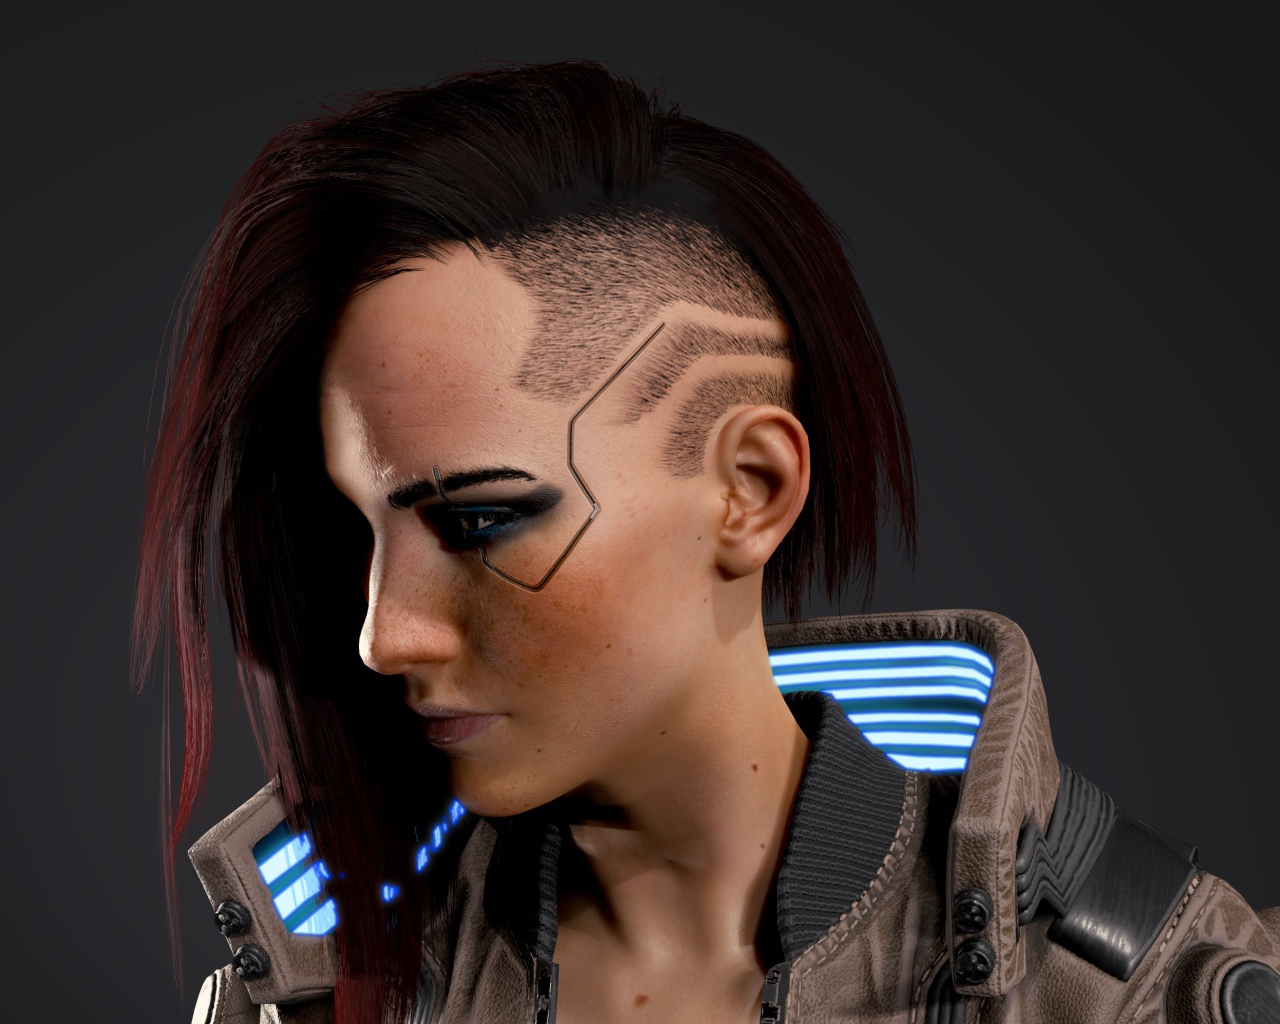 Девушка, солдат персонаж компьютерной игры Cyberpunk 2077